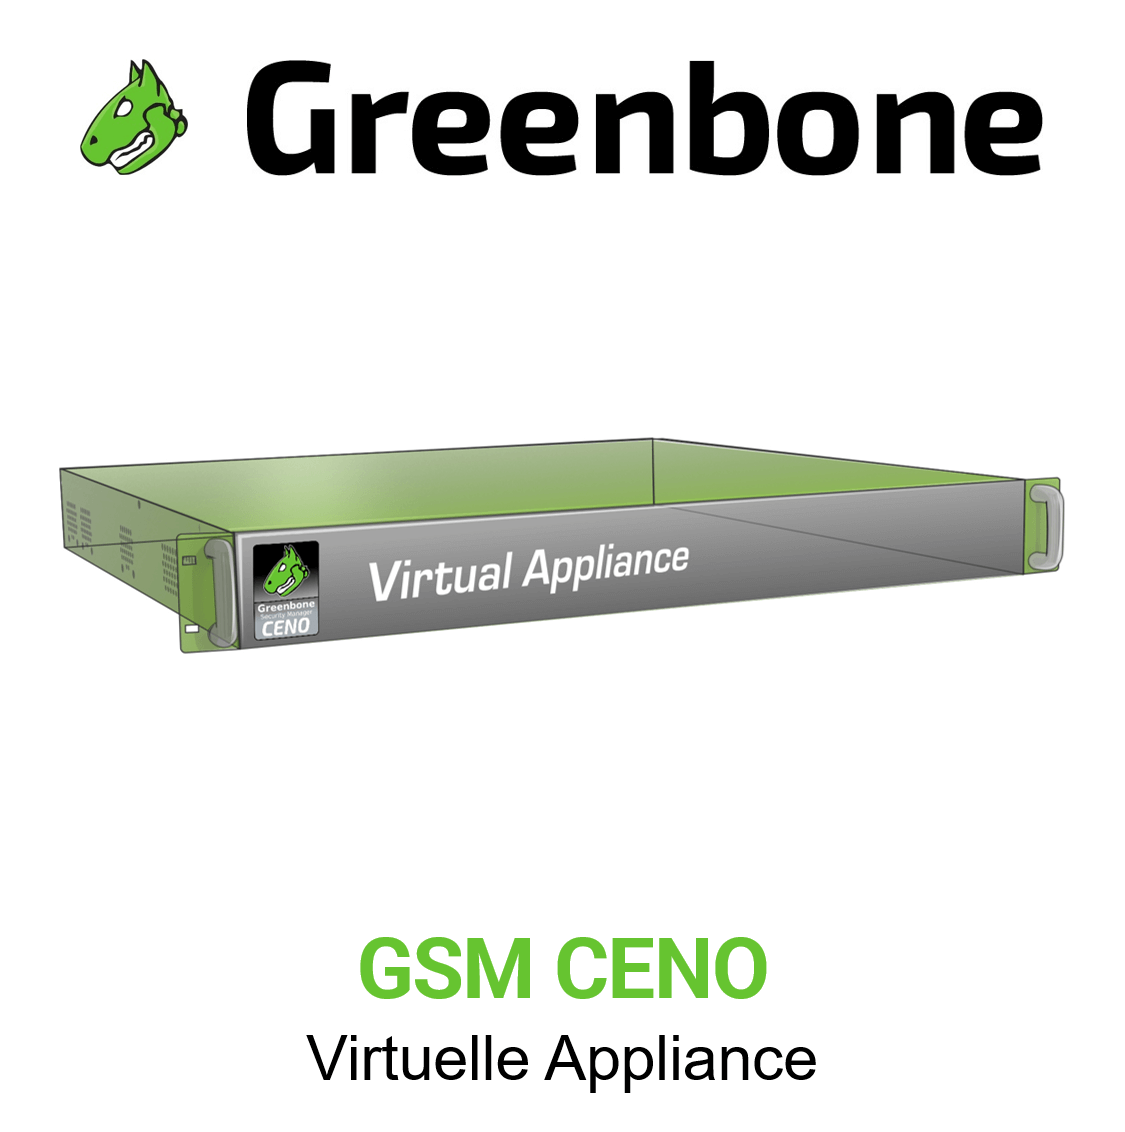 Greenbone GSM-CENO Virtuelle Appliance Vorschaubild mit Greenbone logo und Modellbezeichnung